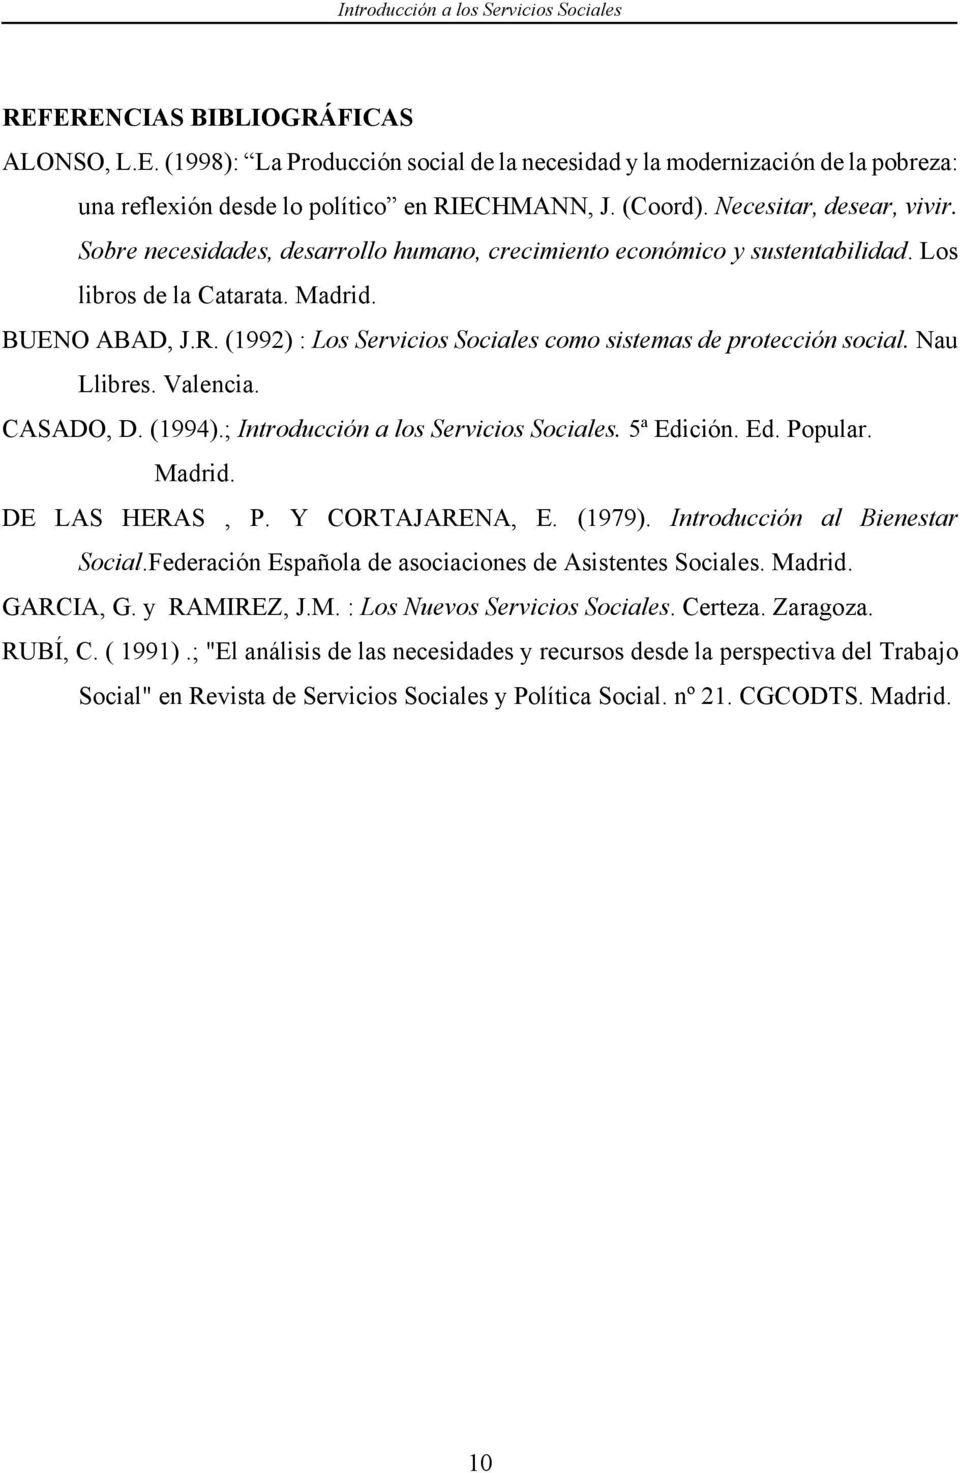 (1992) : Los Servicios Sociales como sistemas de protección social. Nau Llibres. Valencia. CASADO, D. (1994).; Introducción a los Servicios Sociales. 5ª Edición. Ed. Popular. Madrid. DE LAS HERAS, P.